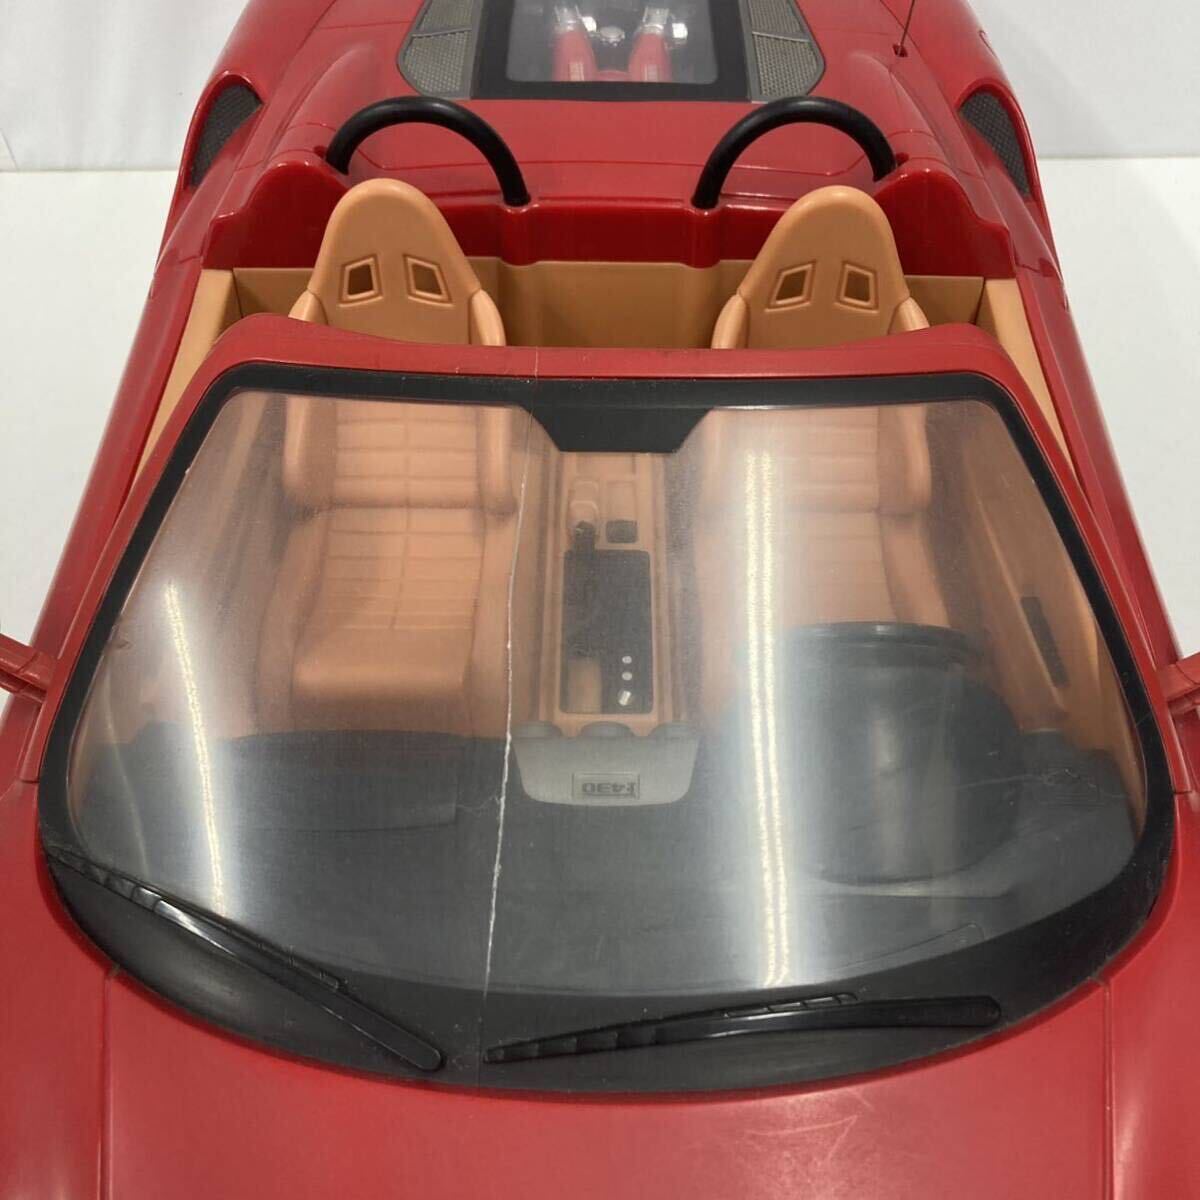 MJX R/C Technic Ferrari Ferrari F430 SPIDER радиоконтроллер общая длина примерно 65cm работоспособность не проверялась текущее состояние товар 